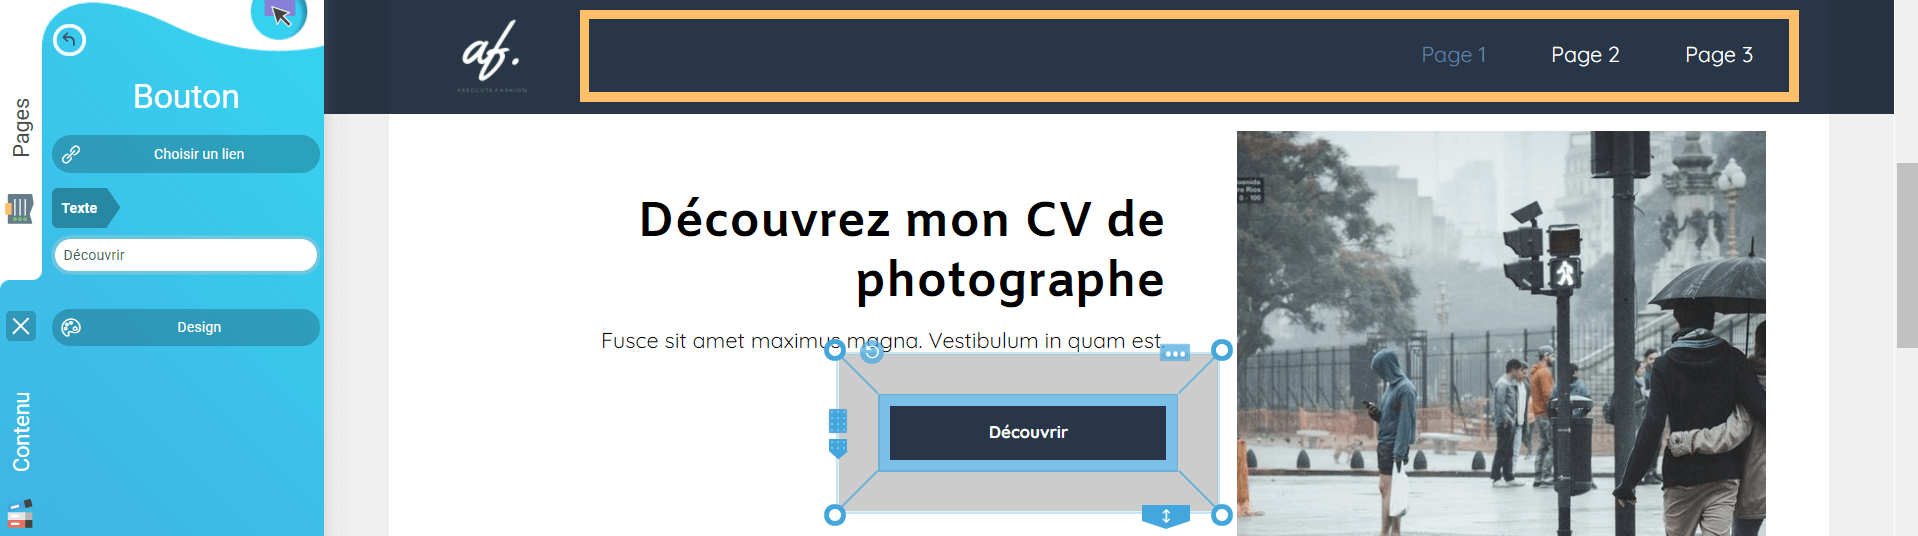 cv7.jpg